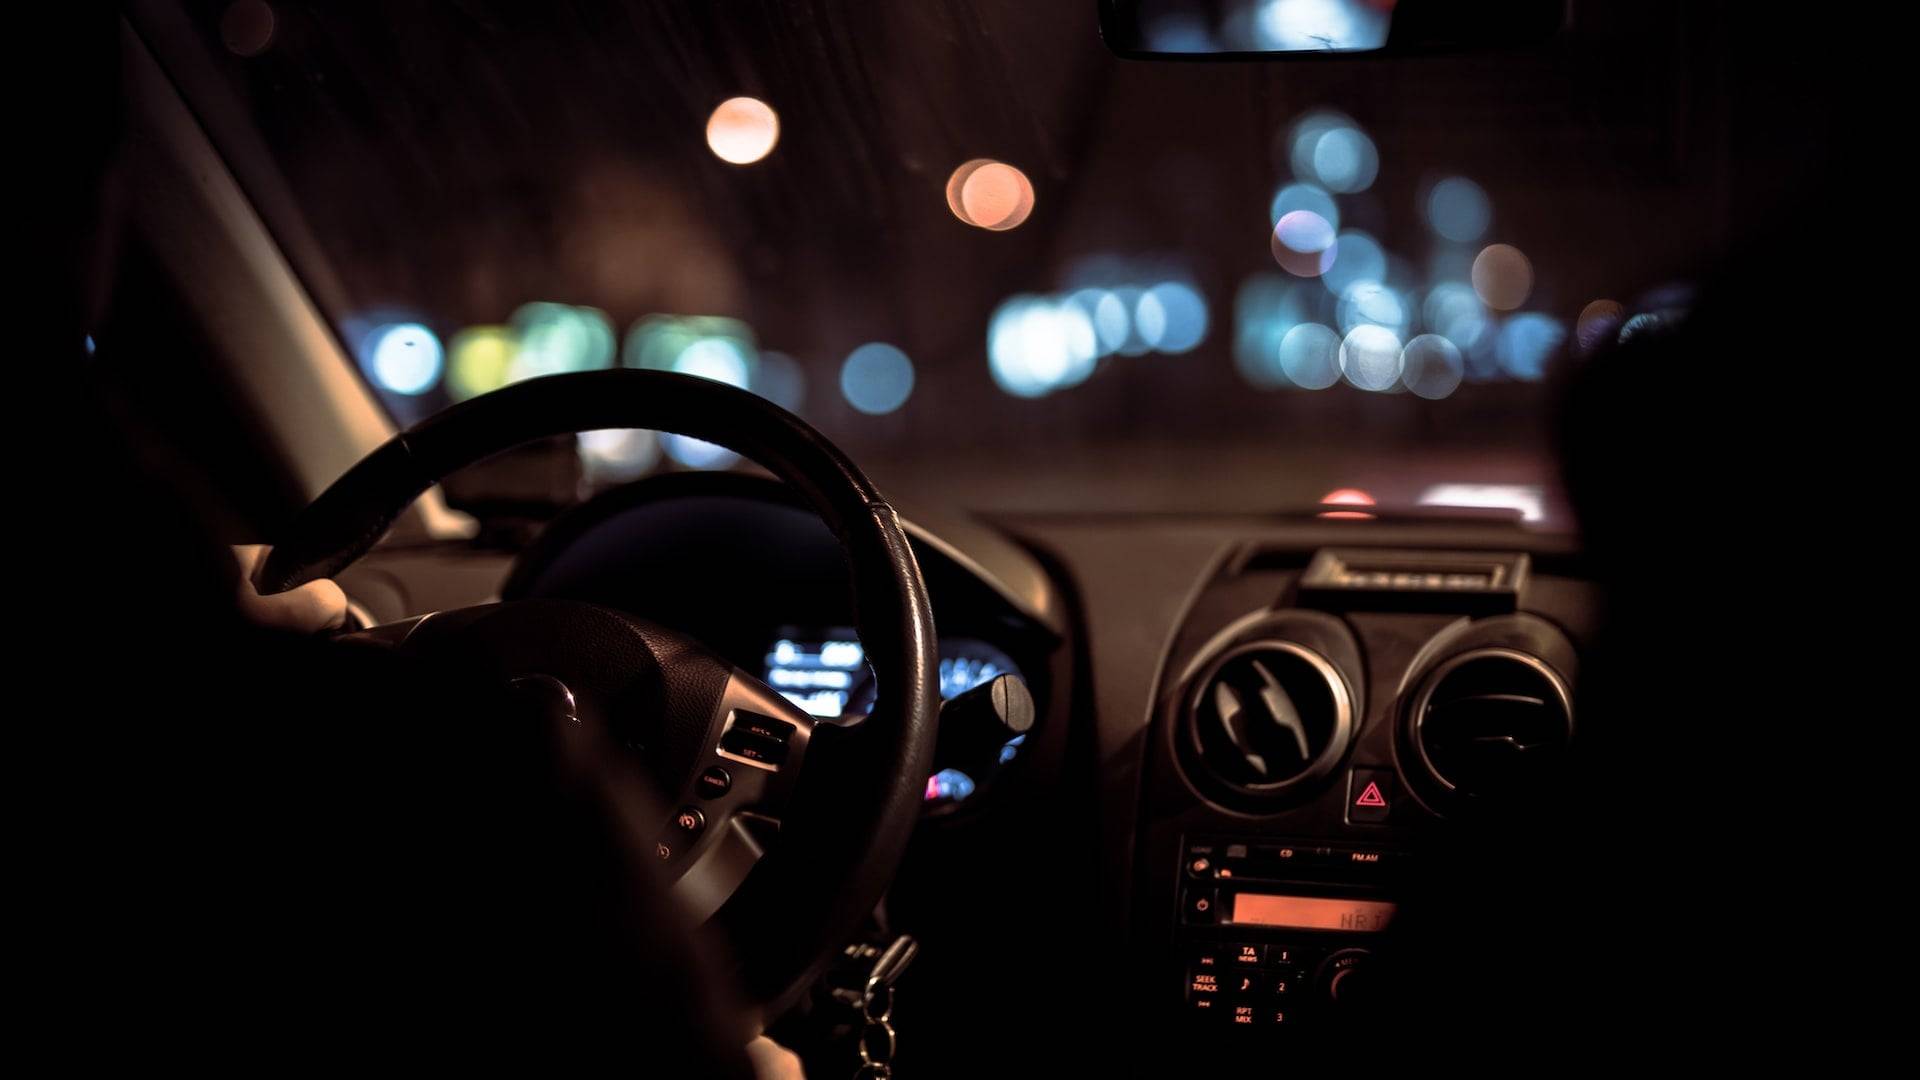 Lunettes de nuit pour conduire dans l'obscurité - Conduite nocturne en  toute sécurité